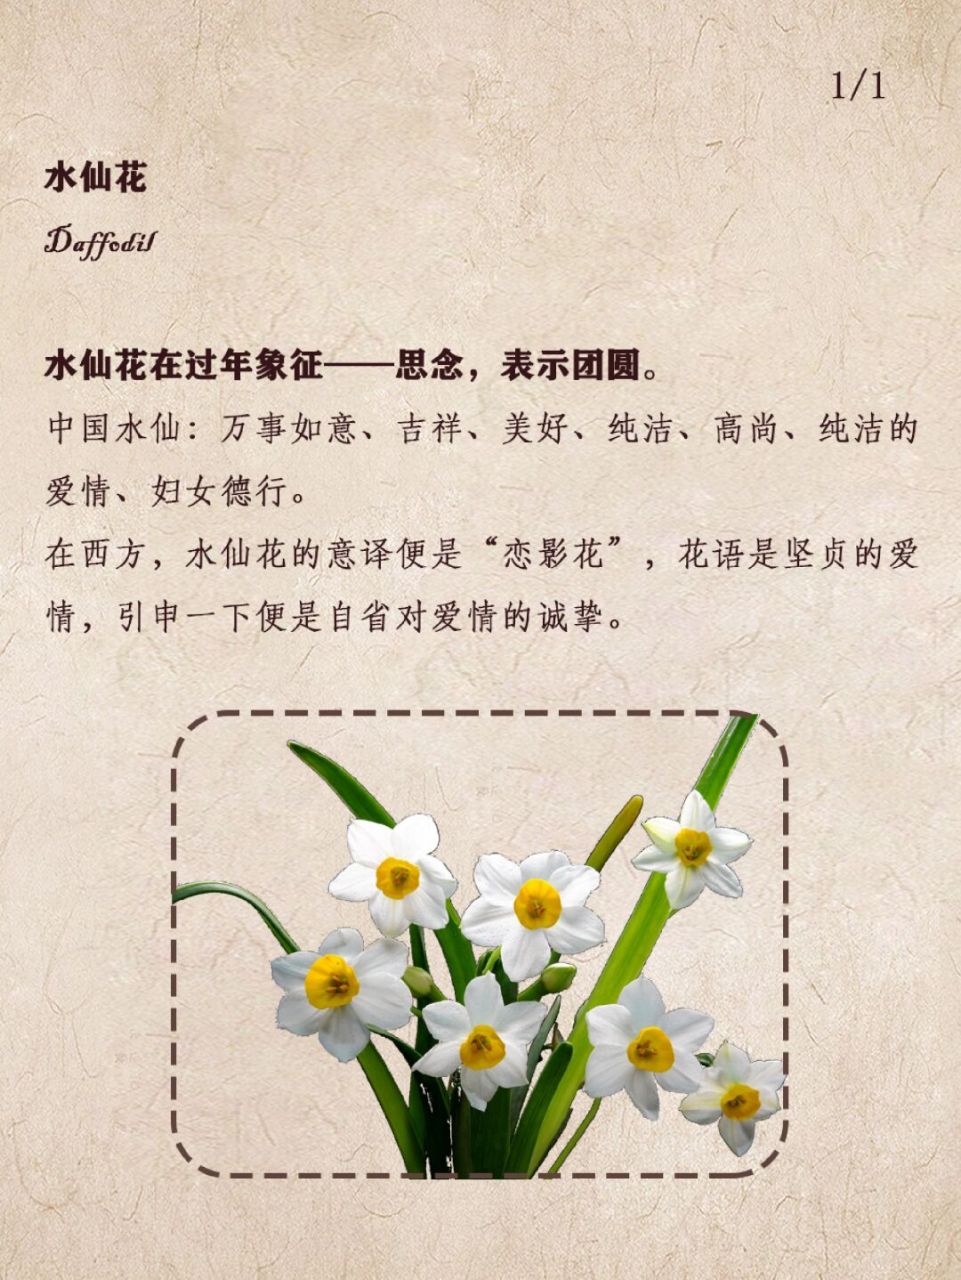 水仙花的特点特征图片